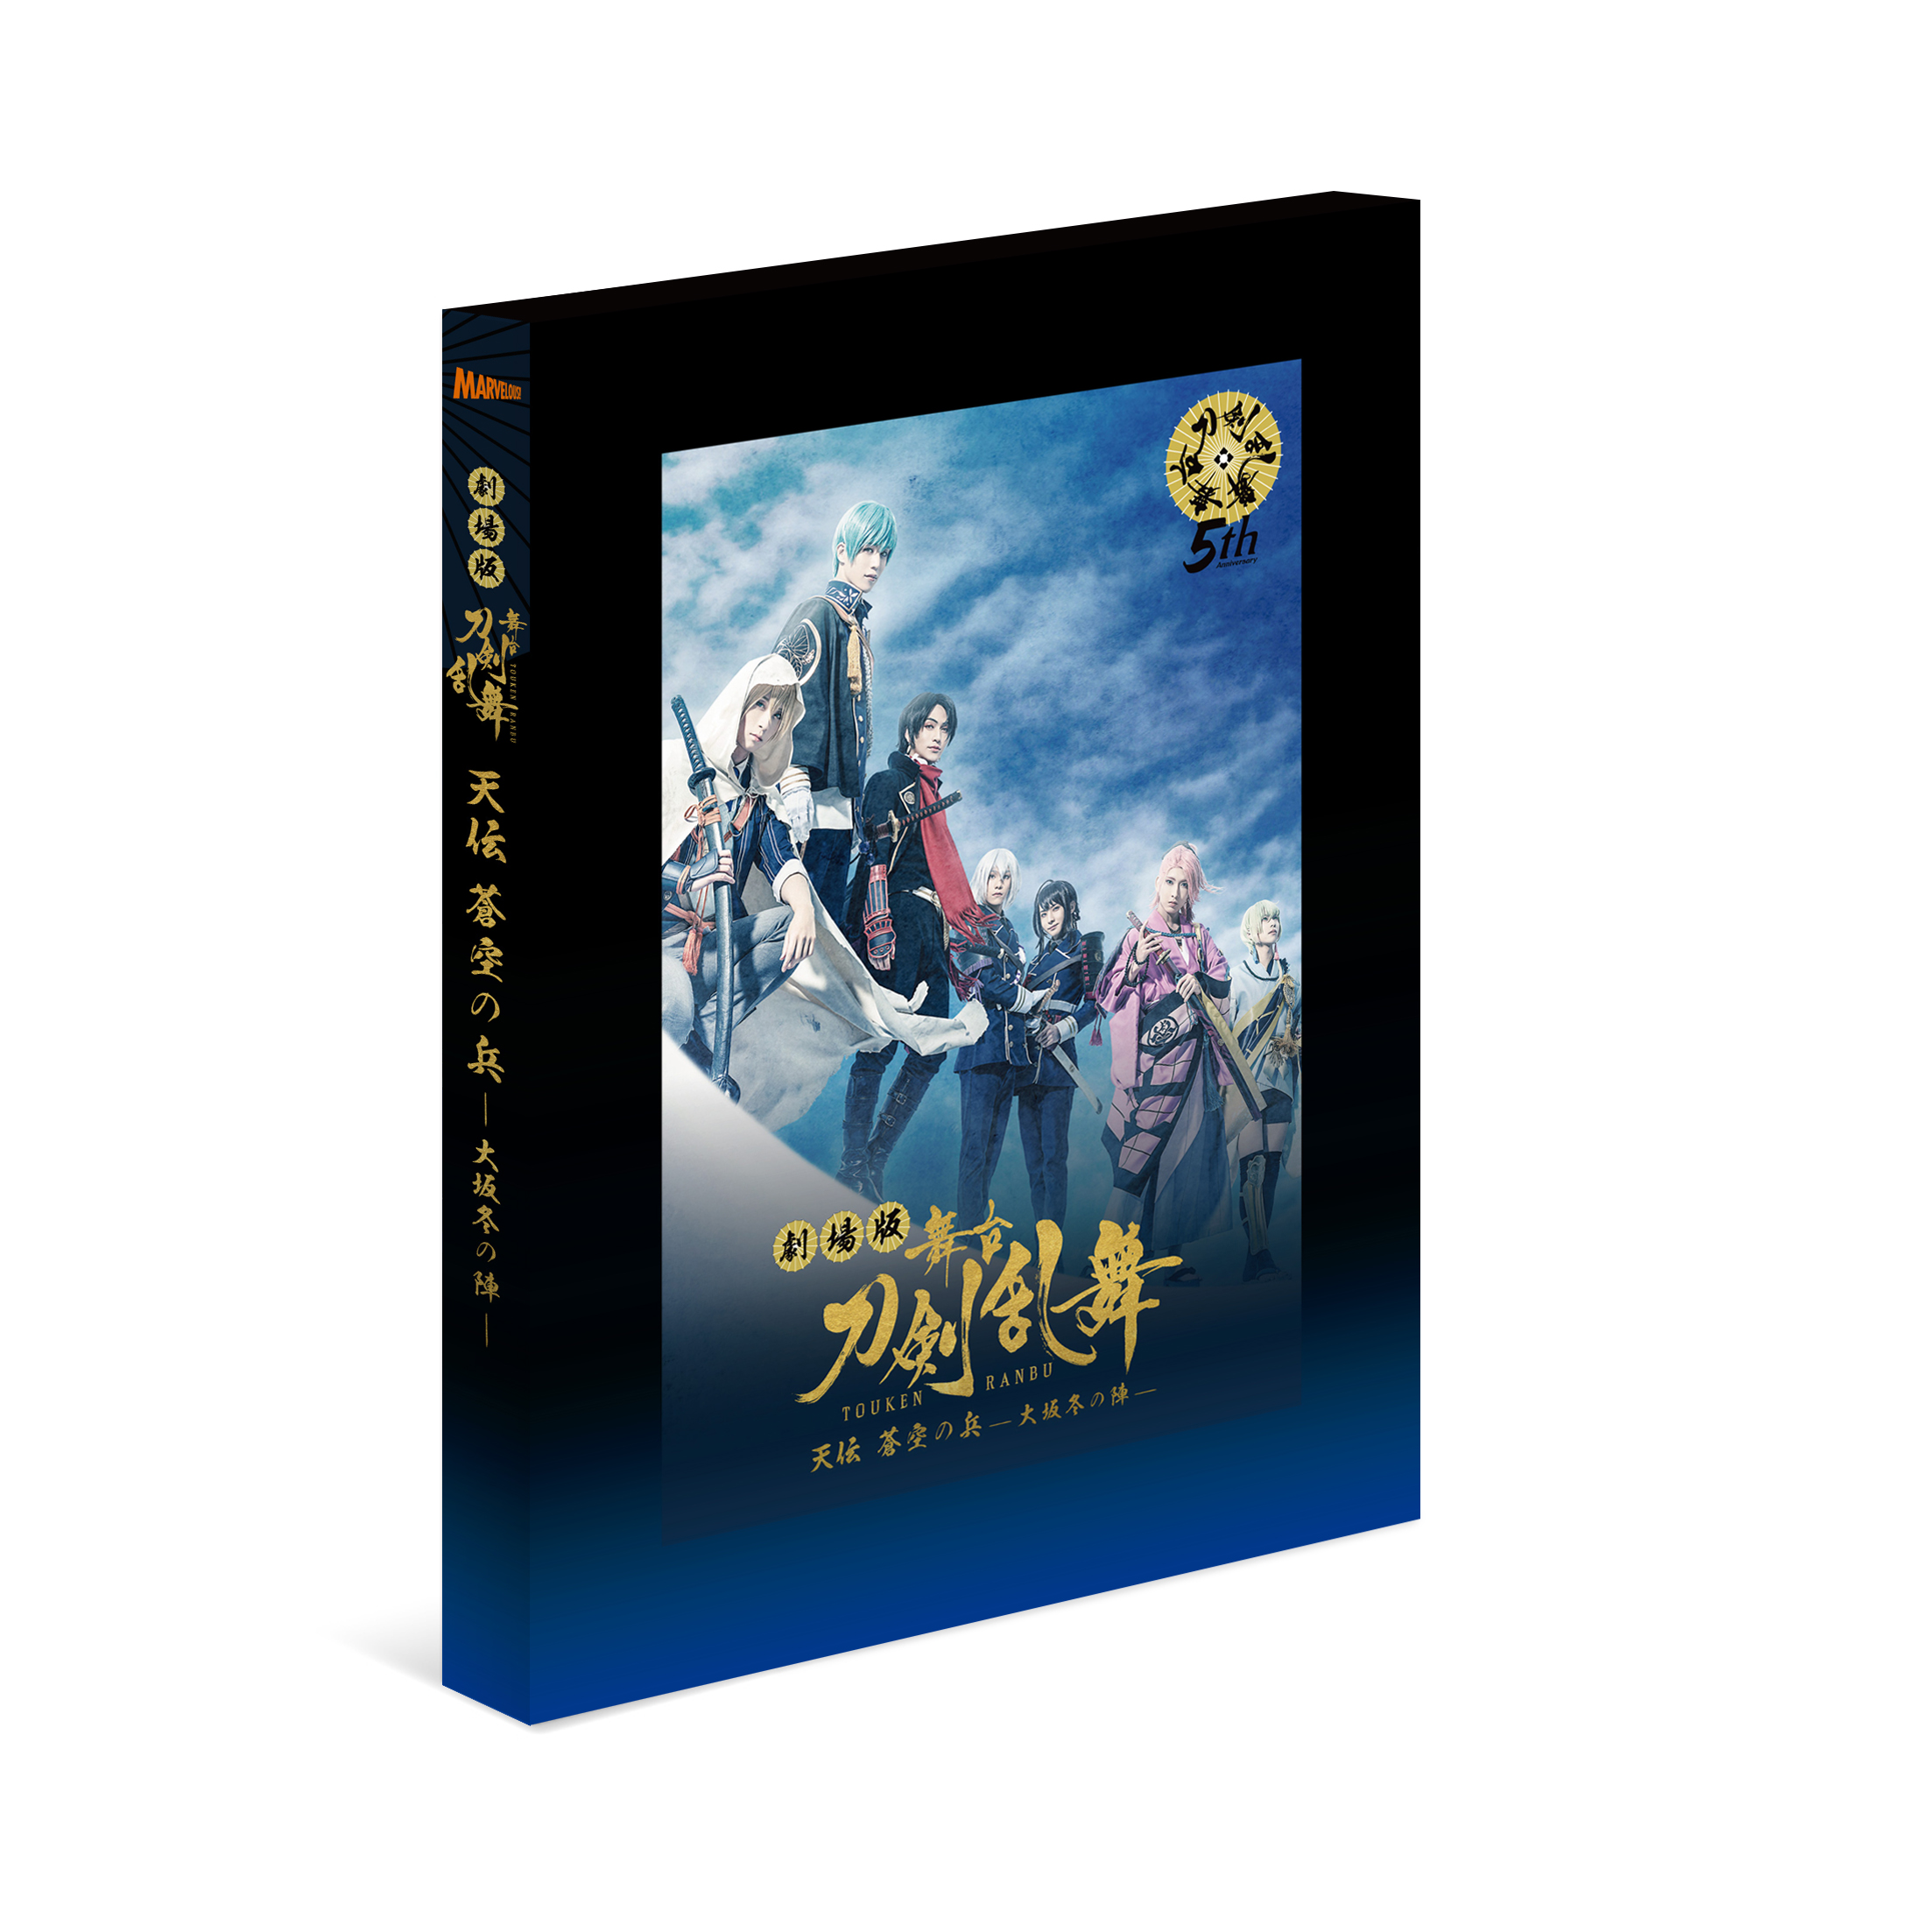 劇場版 舞台『刀剣乱舞』天伝 蒼空の兵 -大坂冬の陣- Blu-ray/DVD 